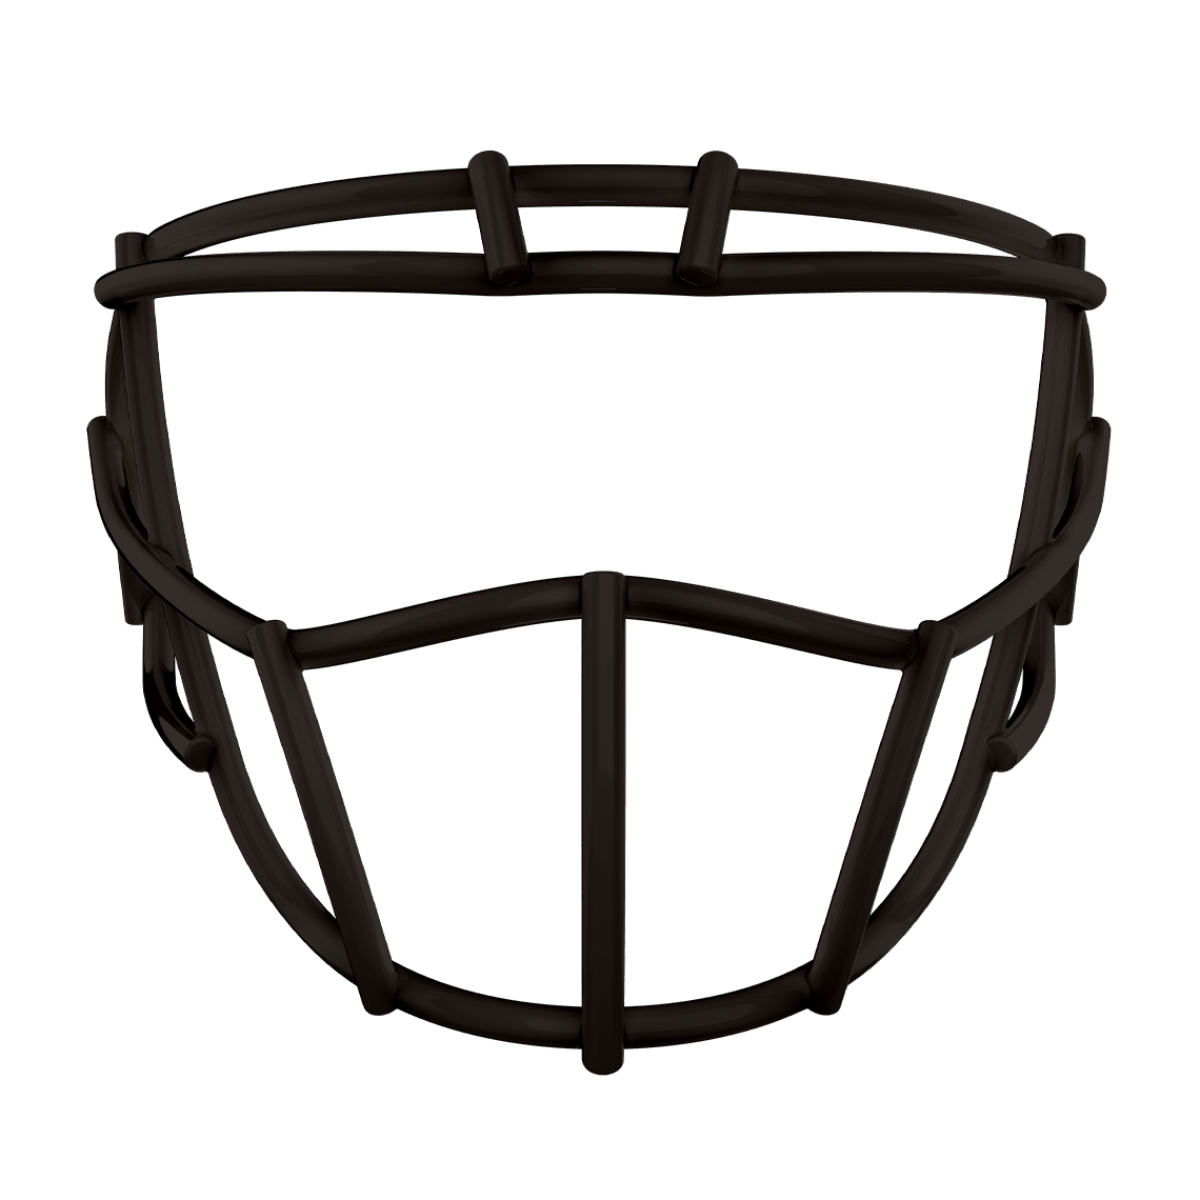 Black Pride face mask for football helmet.